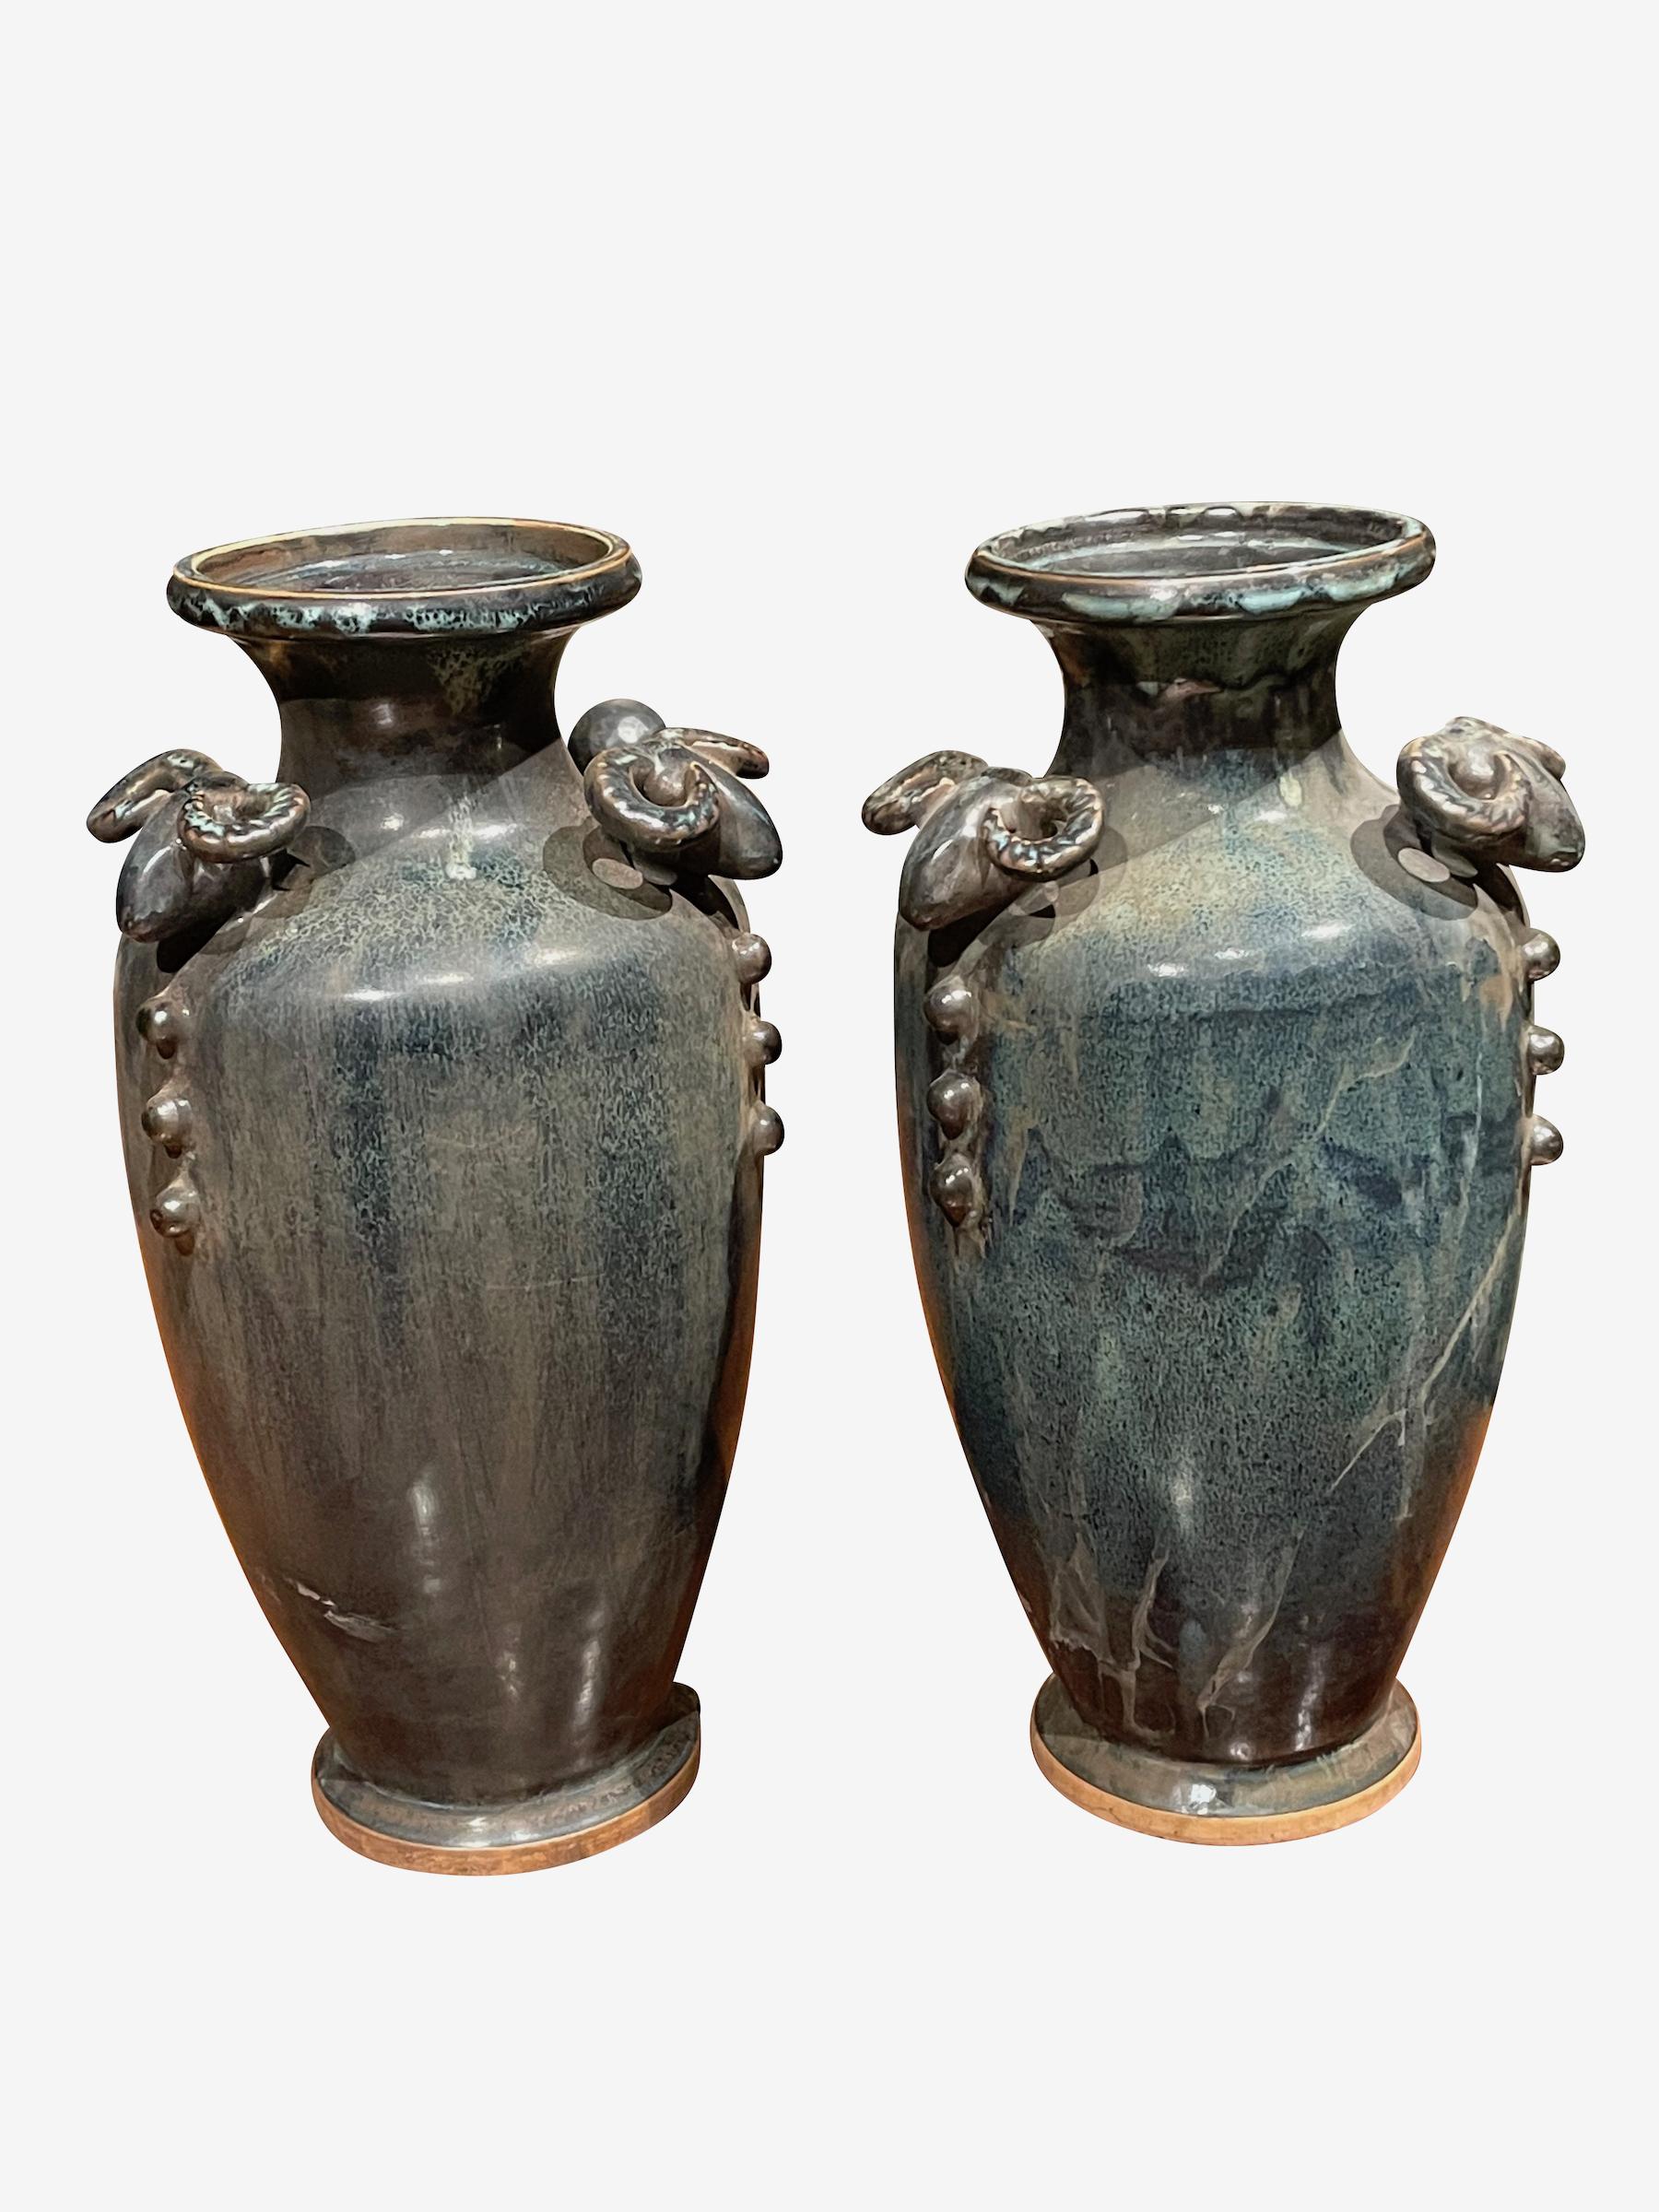 Vase contemporain chinois émaillé de turquoise foncé et de bronze.
Têtes de béliers décoratives à l'ouverture.
Deux disponibles et vendus individuellement.
